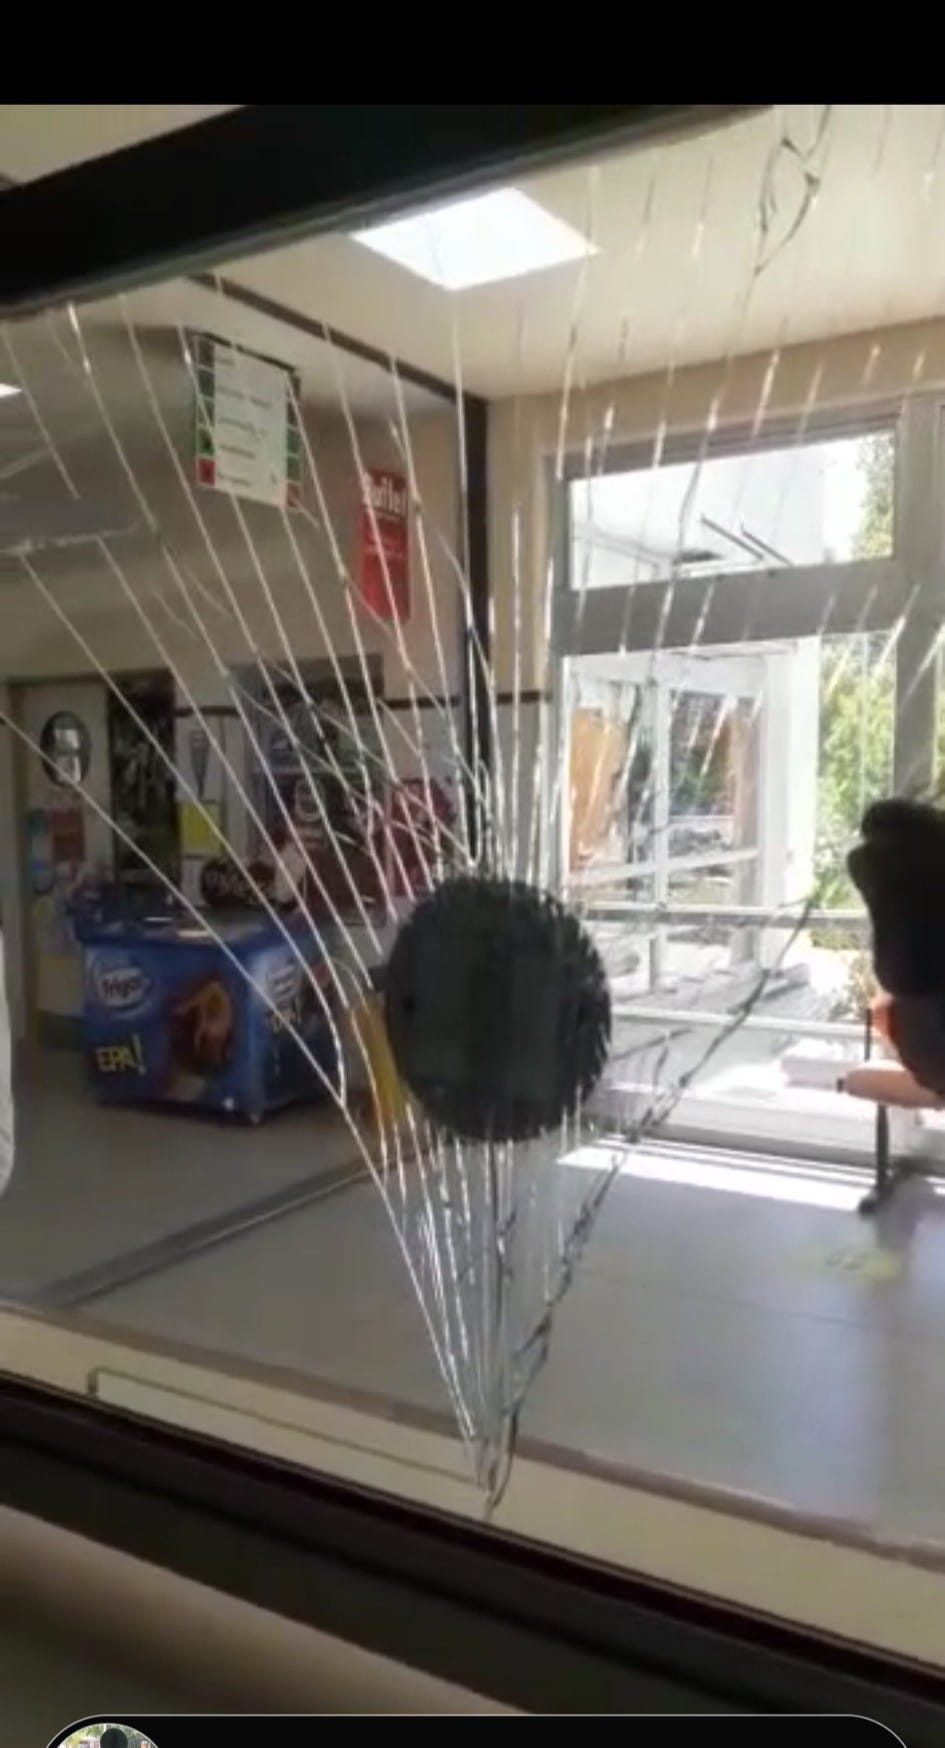 El hombre le pegó una piña al vidrio del mostrador de la farmacia. (Foto hospital Heller).-